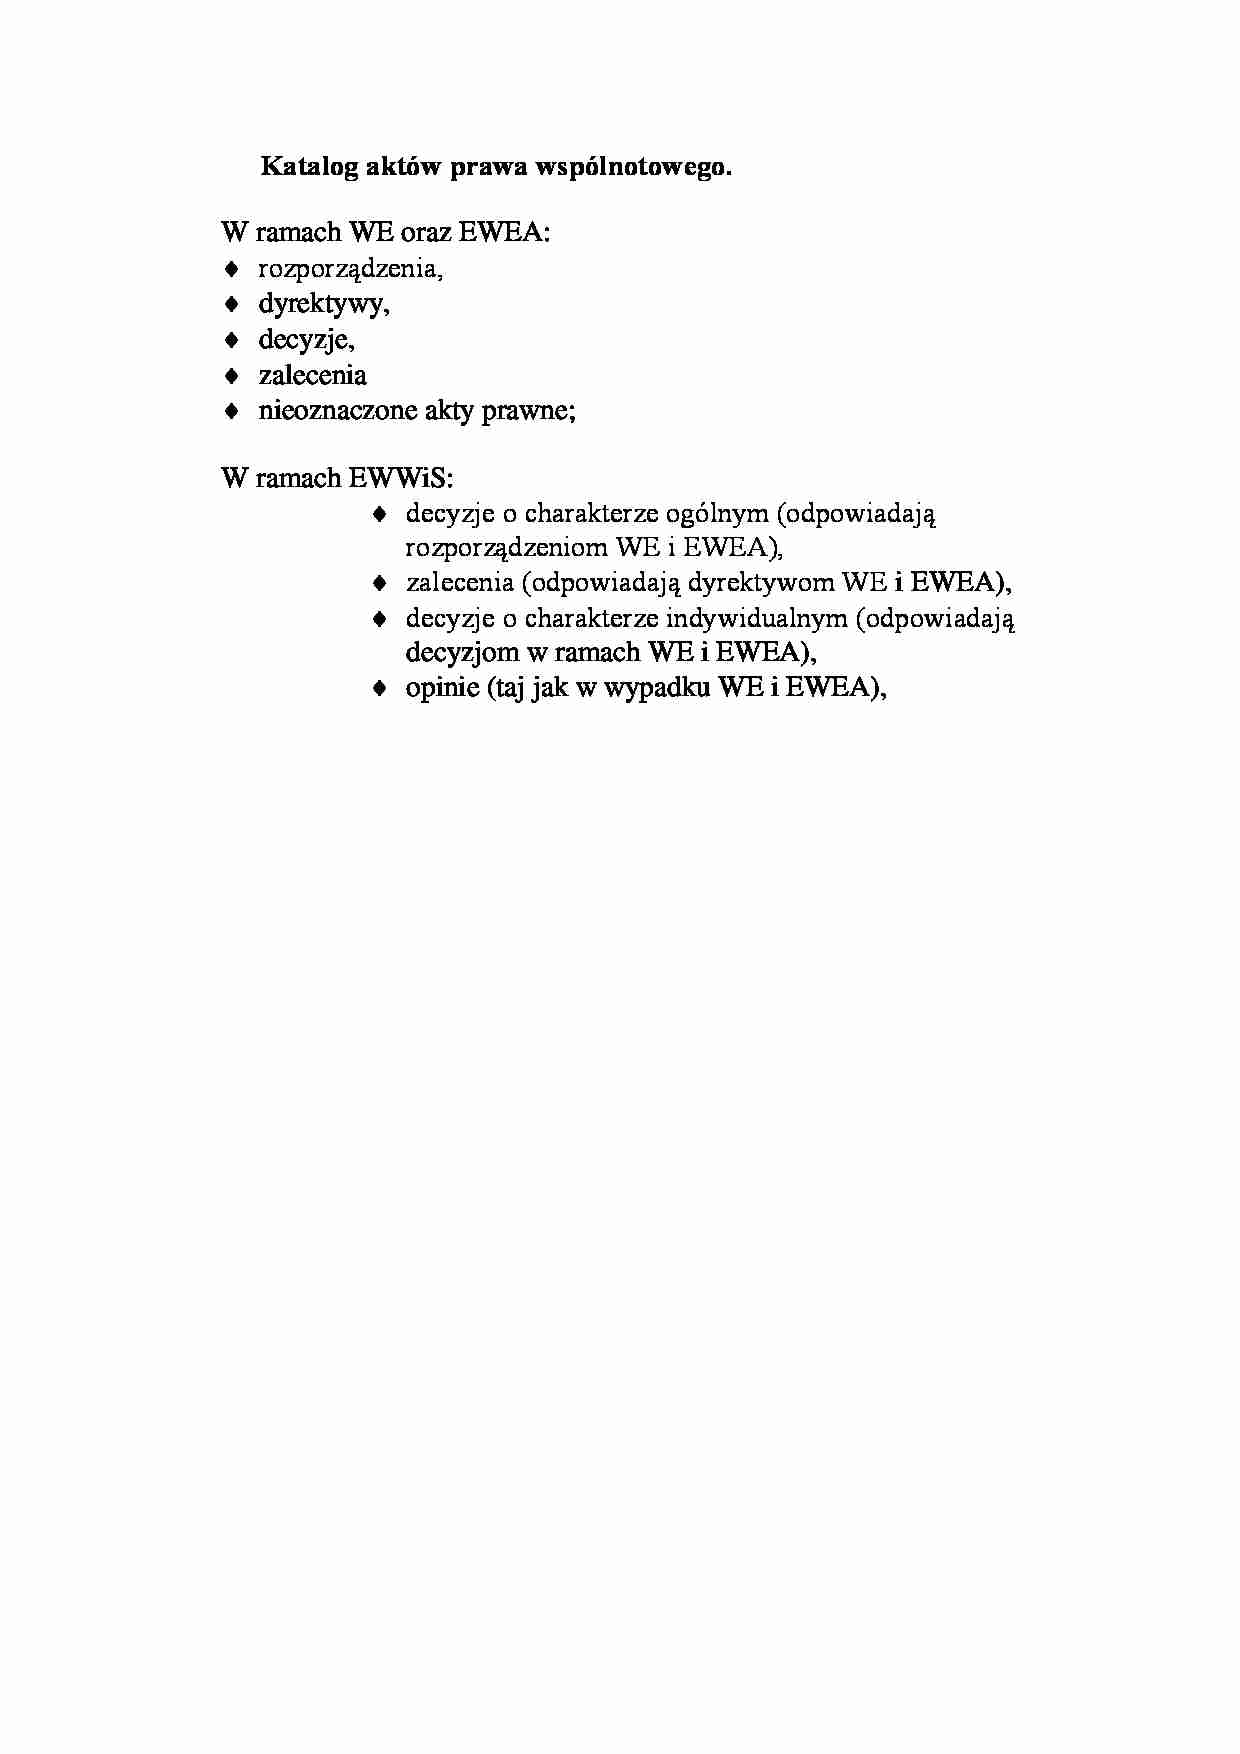 Katalog aktów prawa wspólnotowego-opracowanie - strona 1